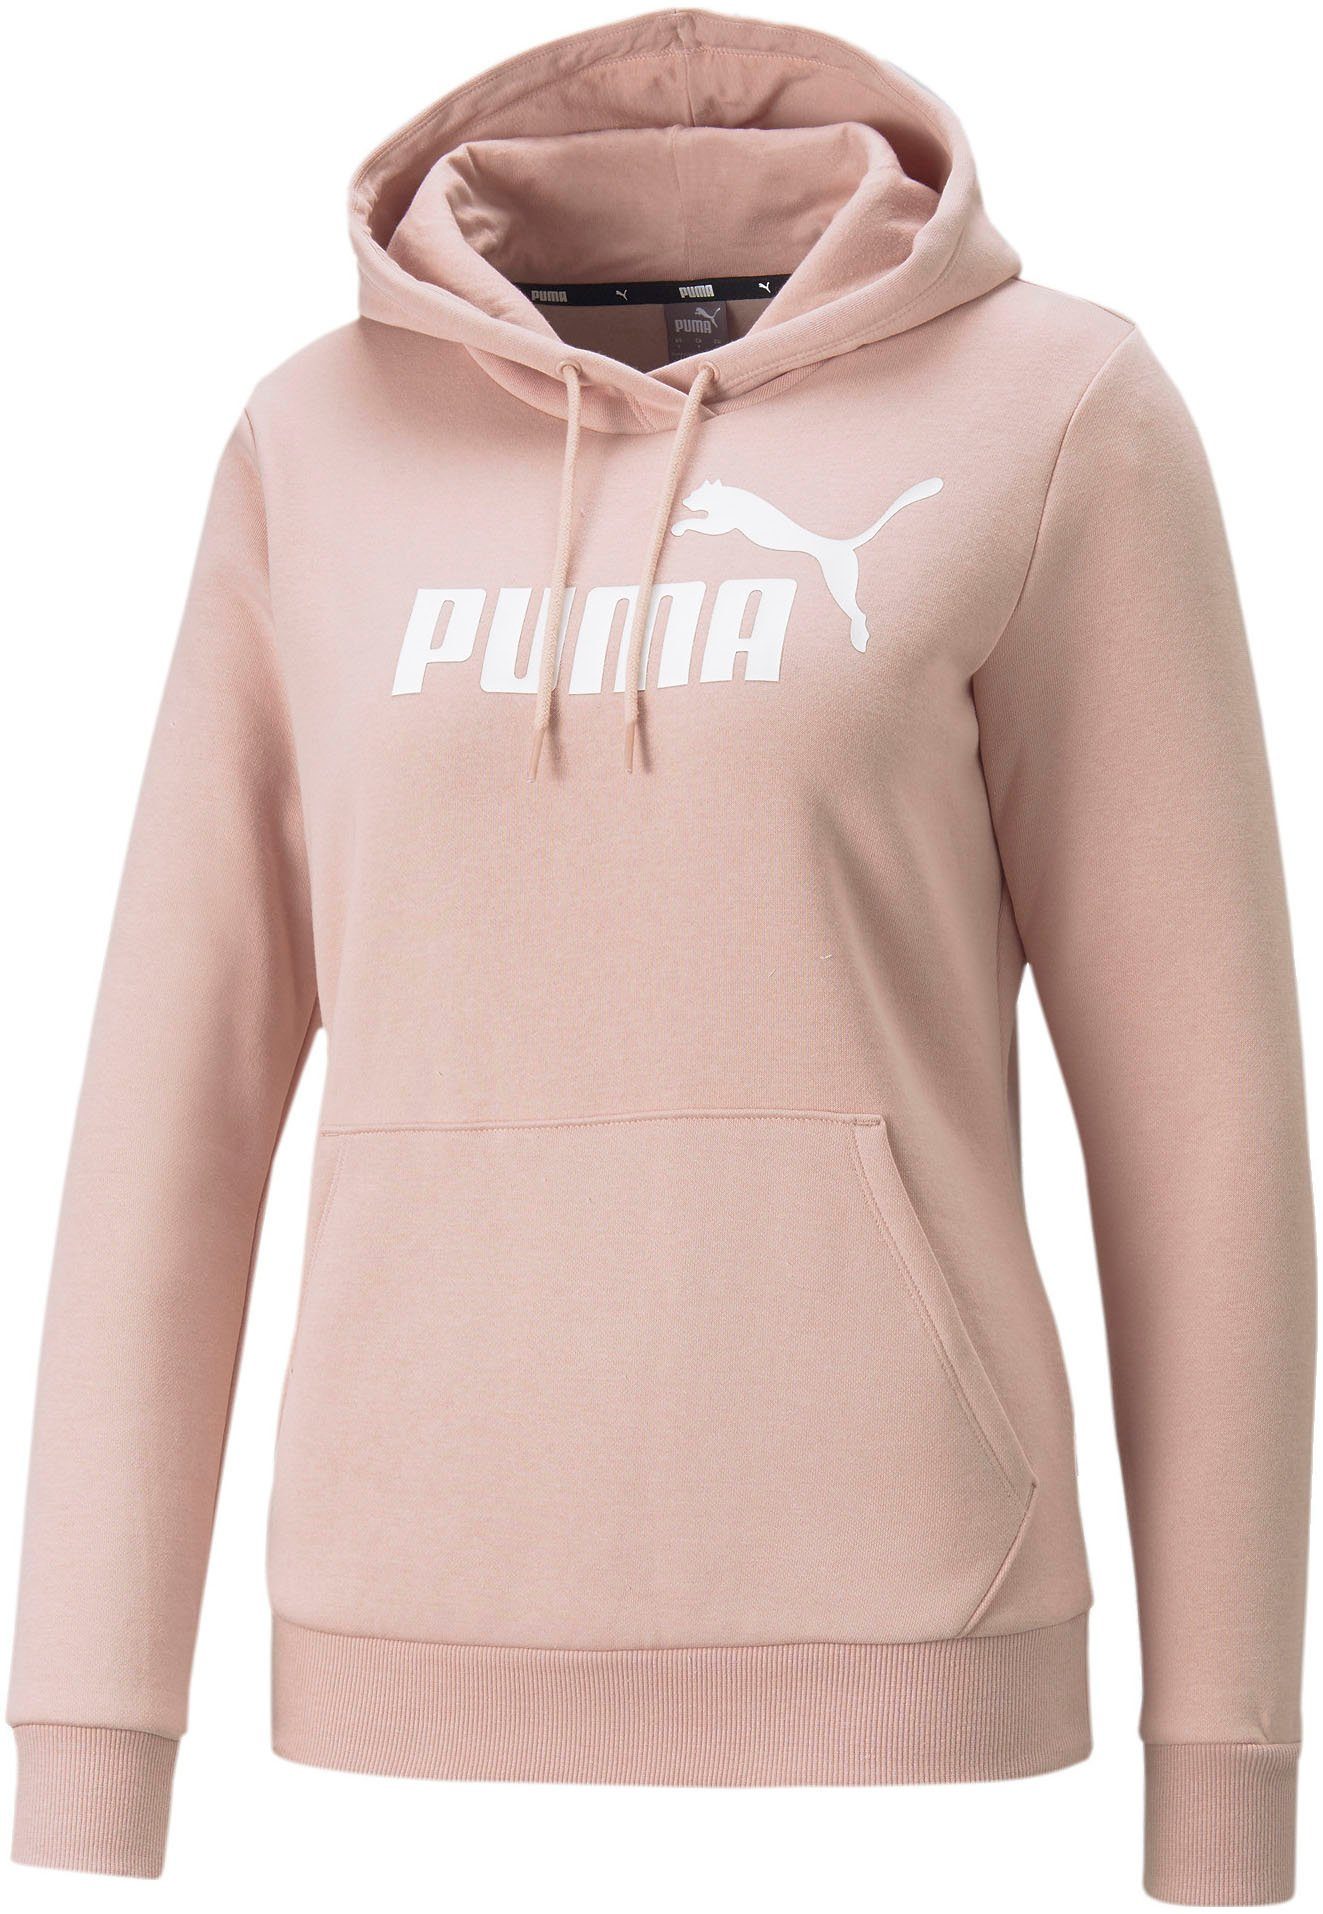 PUMA Pullover online kaufen | OTTO